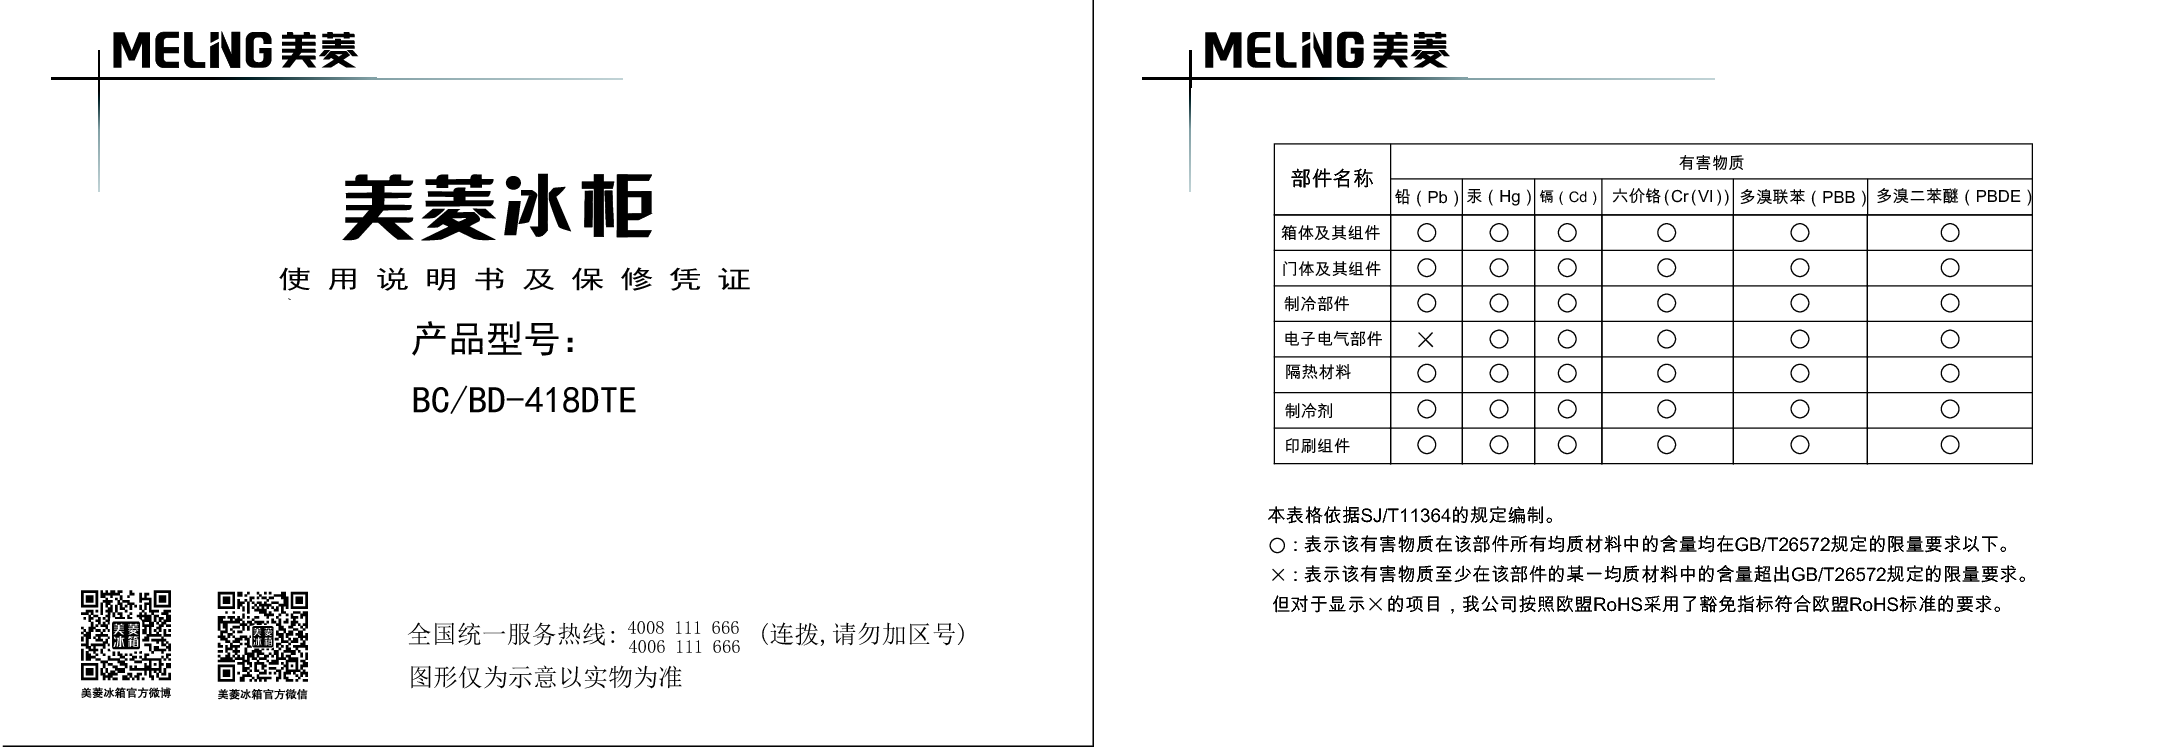 美菱 Meiling BC/BD-418DTE 使用说明书 封面